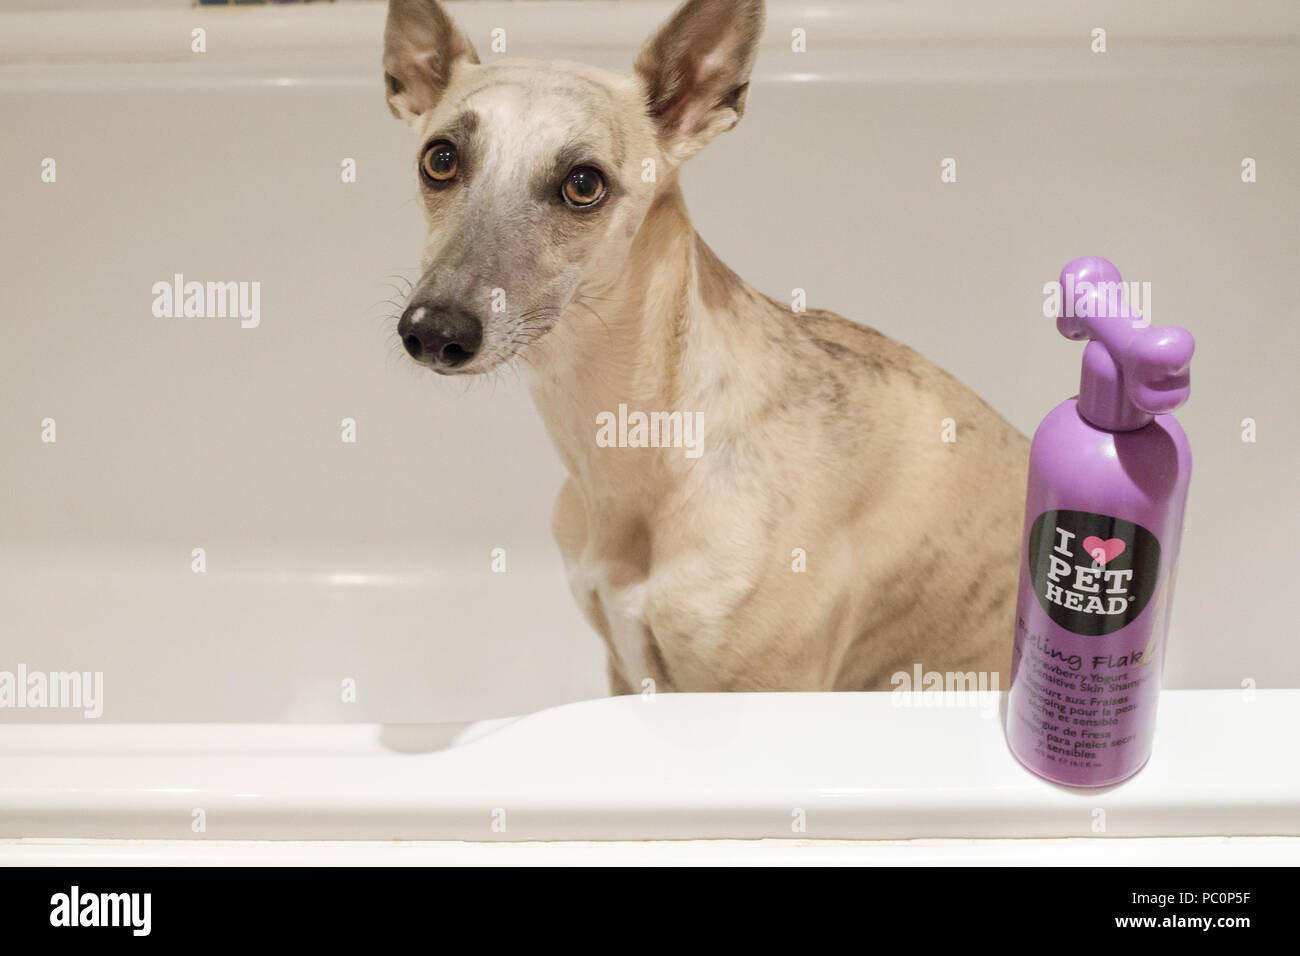 Brindle whippet cane nella vasca da bagno con bottiglia di shampoo per cani Foto Stock